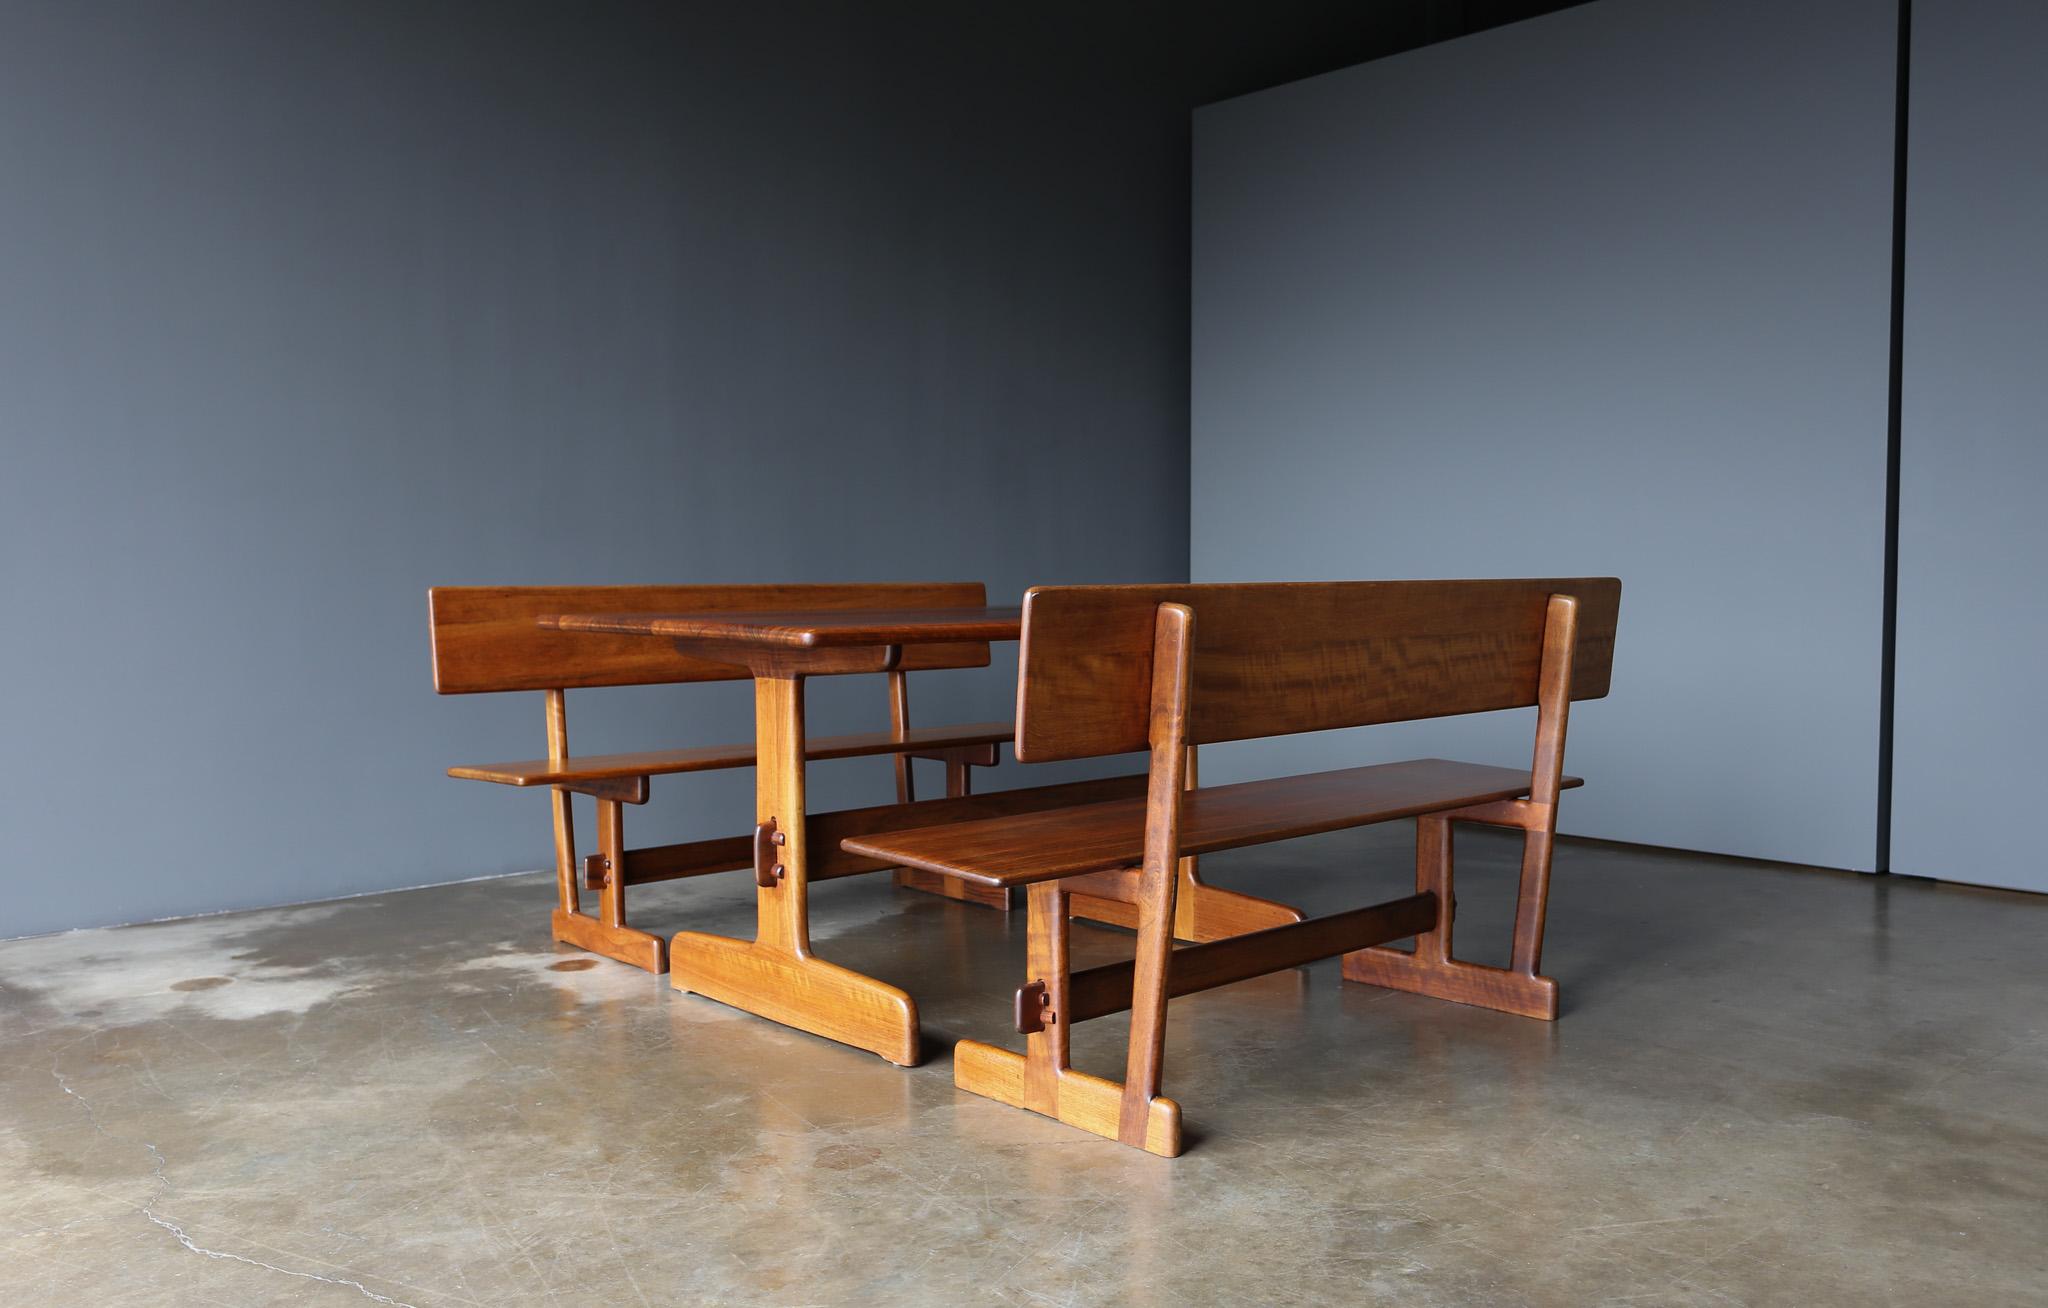 Gerald McCabe Shedua Trestle Dining Table & Benches for Orange Crate Modern.  Santa Monica, Californie, c.C. 1980.  
Les fabricants se retrouvent en bas du tableau.  L'un des bancs est signé à la main en bas.  Magnifique bois de shedua dans toute la